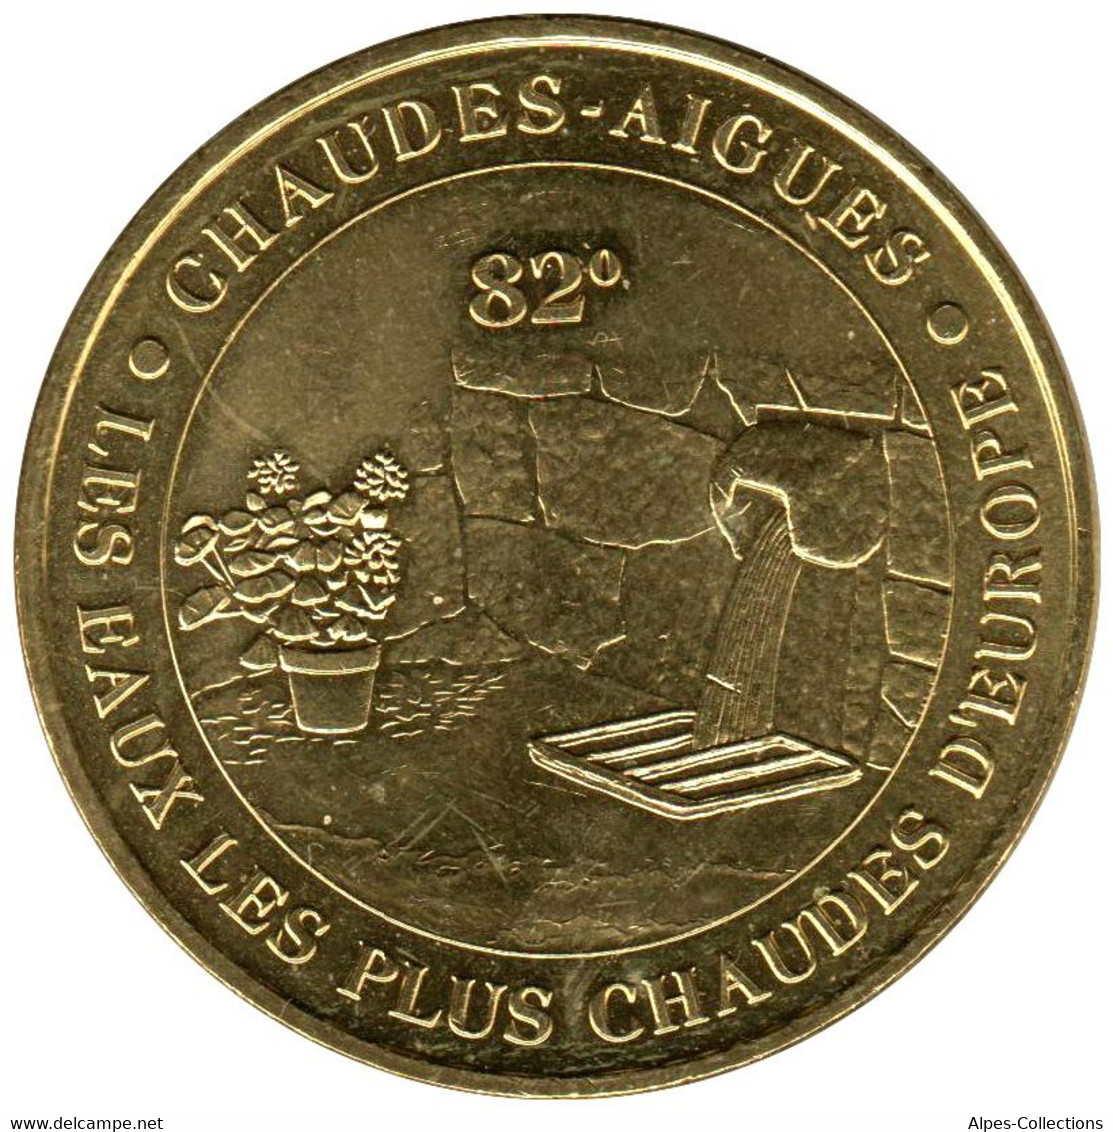 15-0048 - JETON TOURISTIQUE MDP - Chaudes Aigues - 2015.4 - 2015